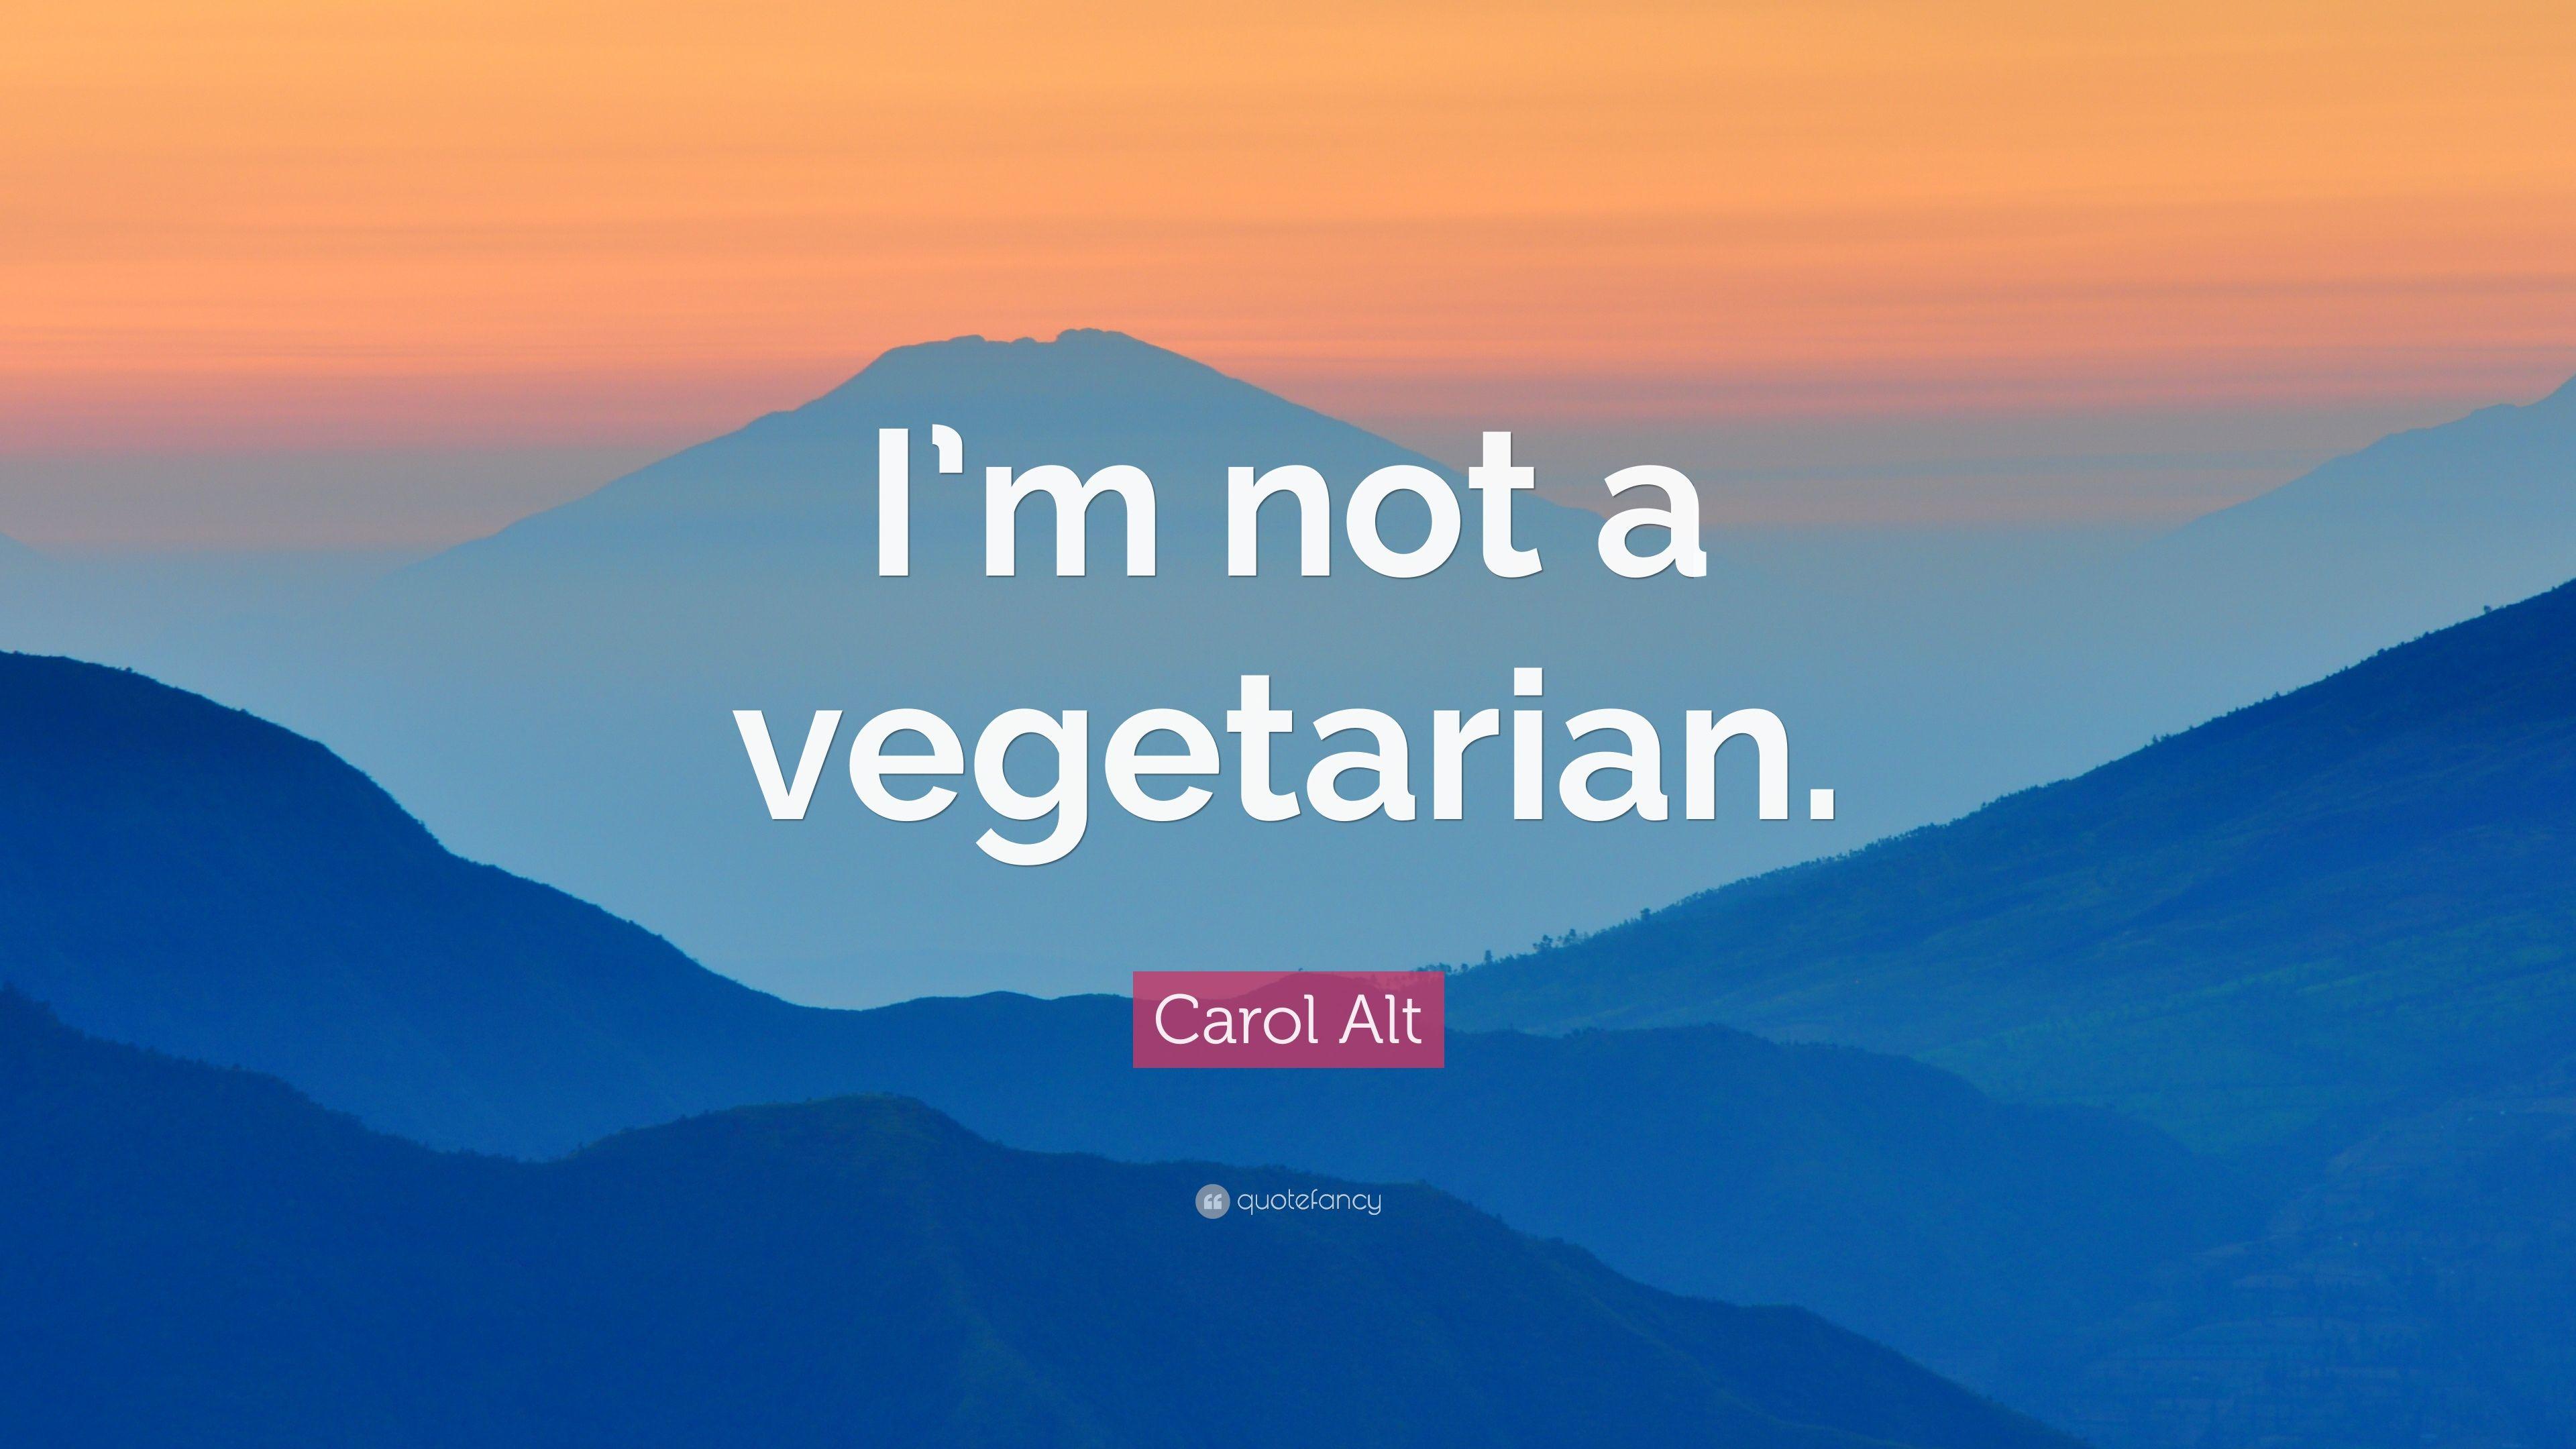 Carol Alt Quote: “I'm not a vegetarian.” (7 wallpaper)